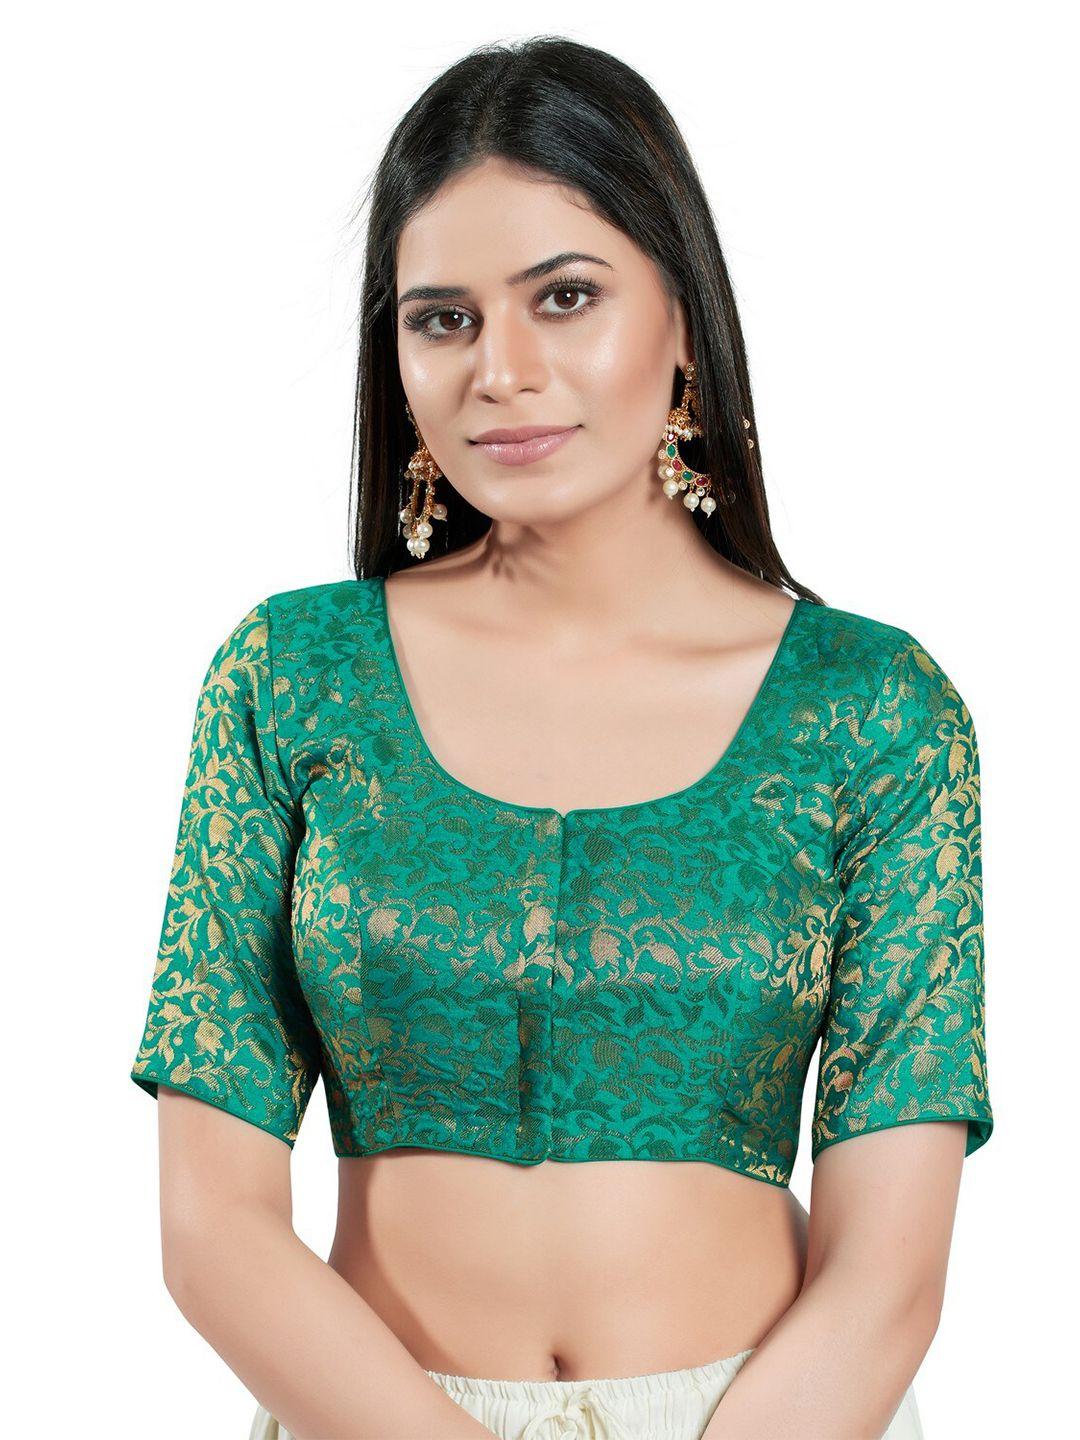 salwar studio woven design brocade saree blouse